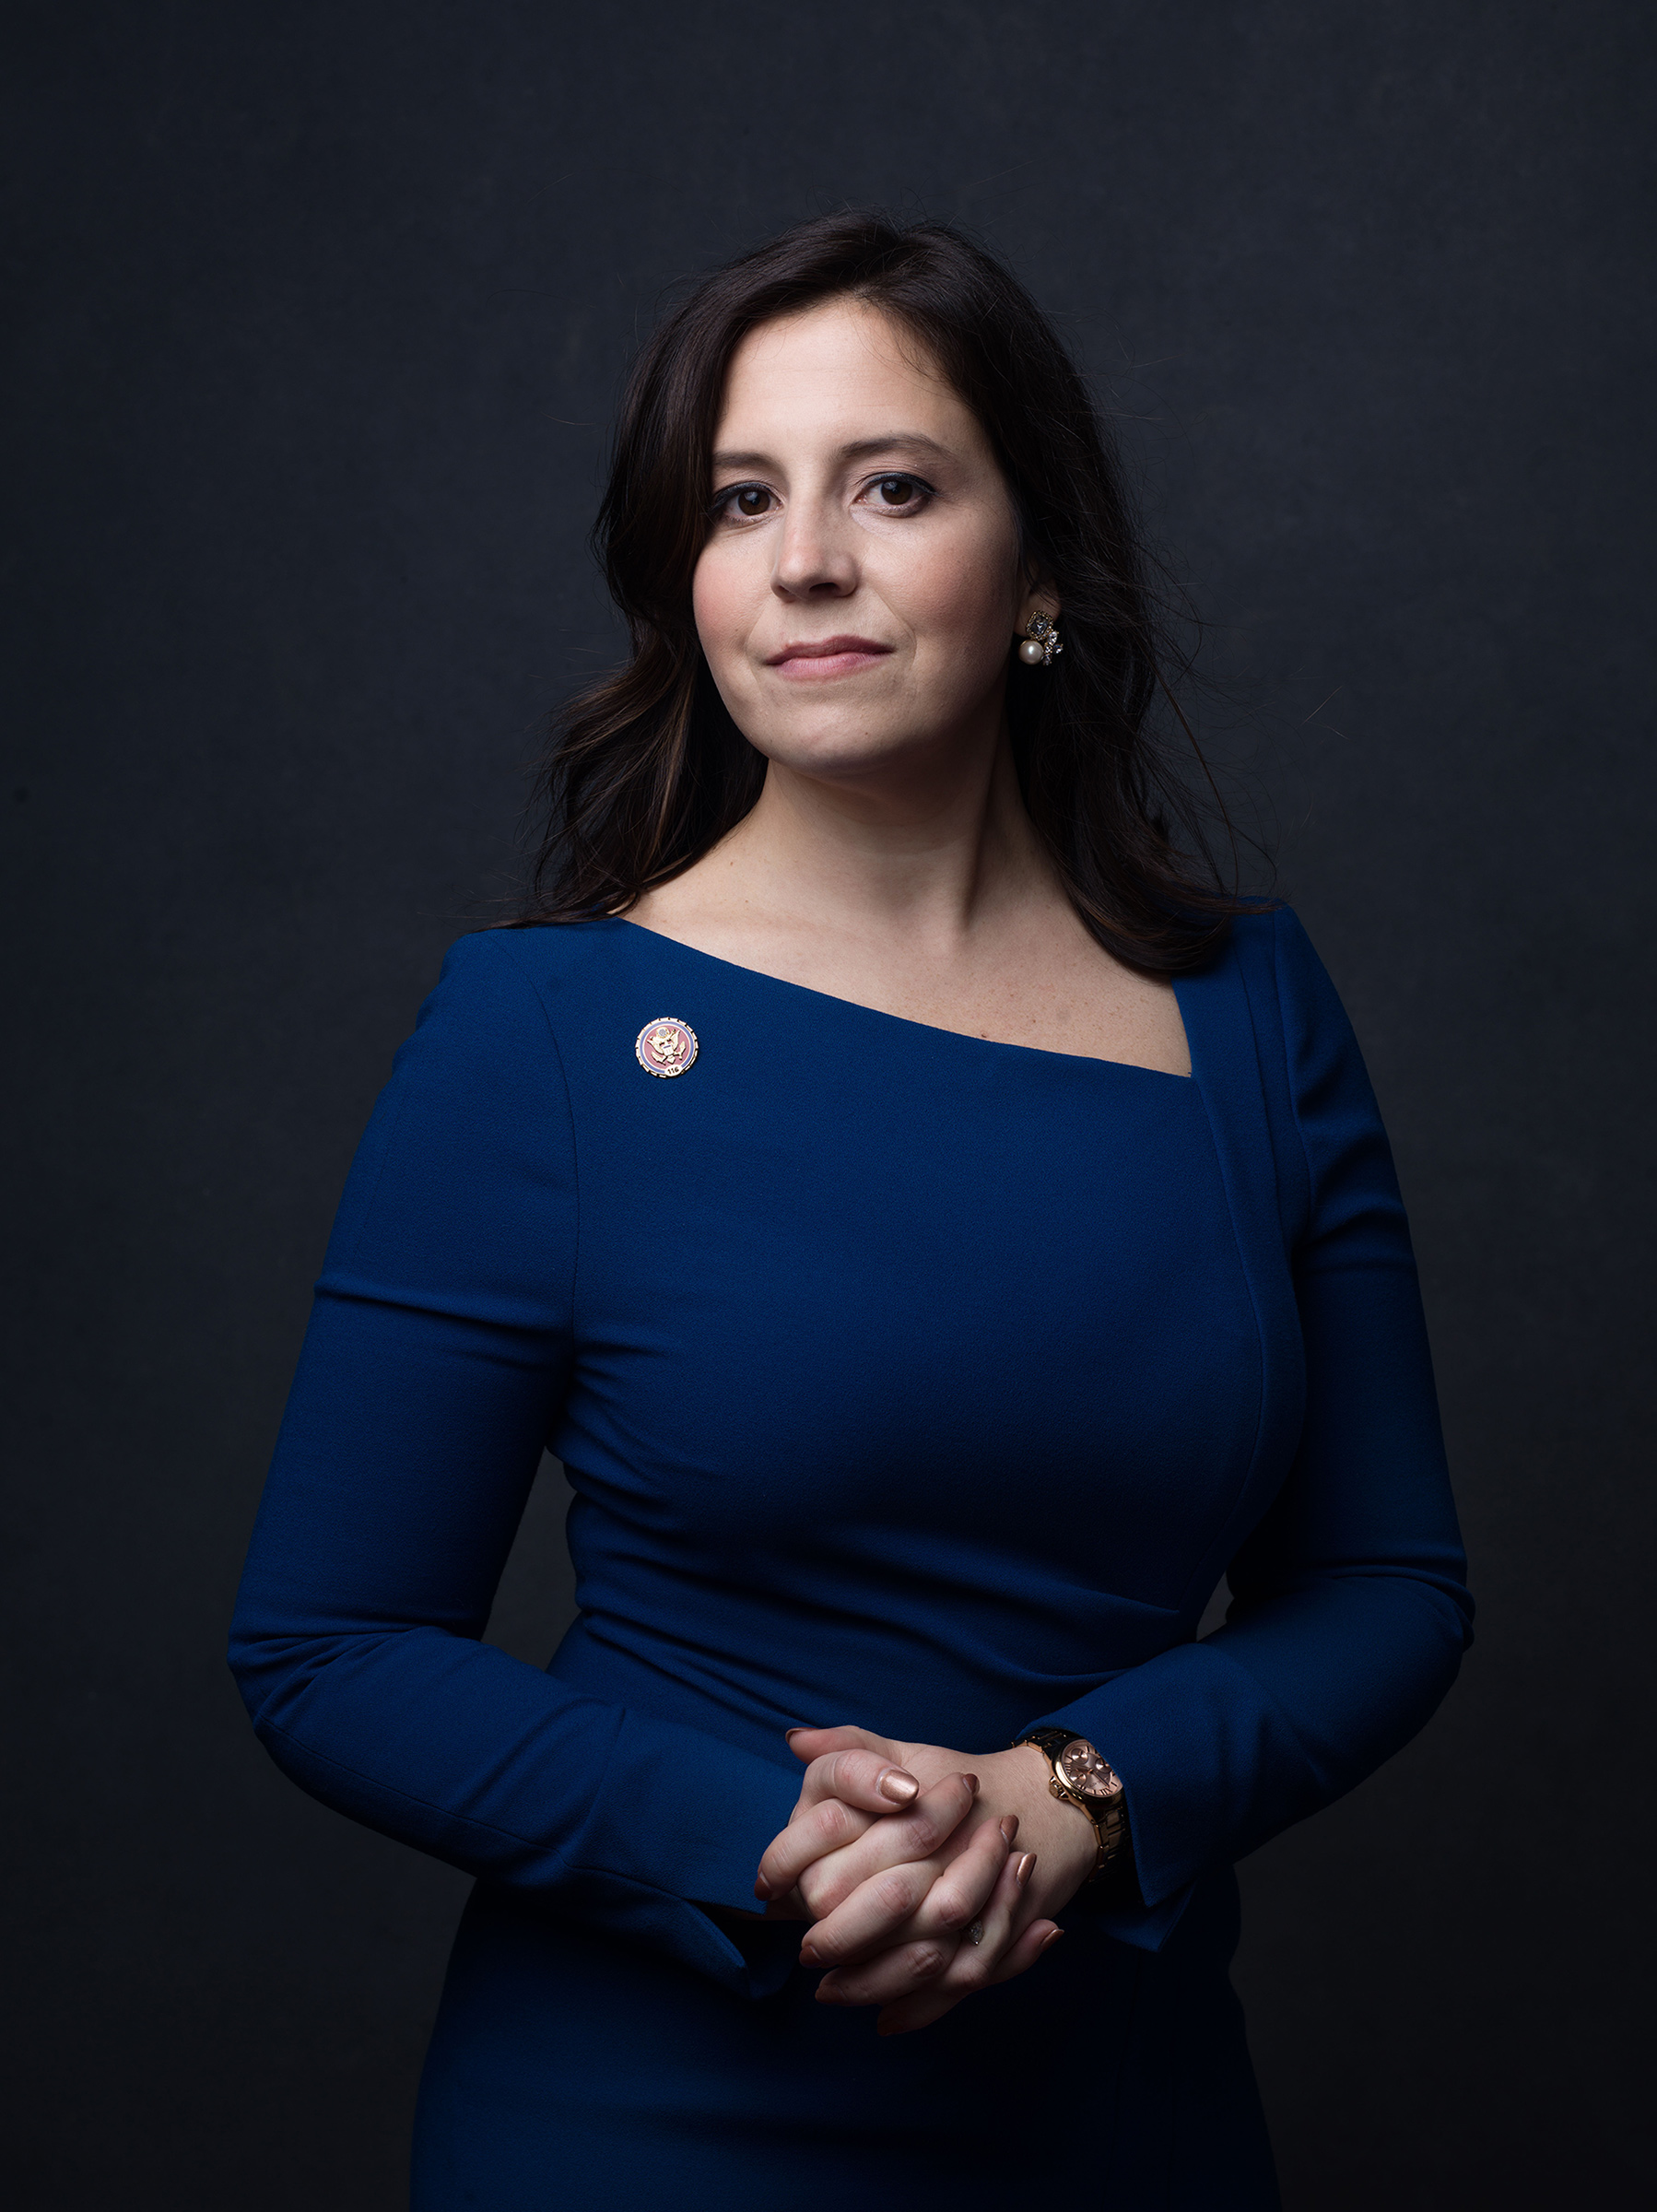 Representative Elise Stefanik in Washington D.C., on Jan. 3, 2019.